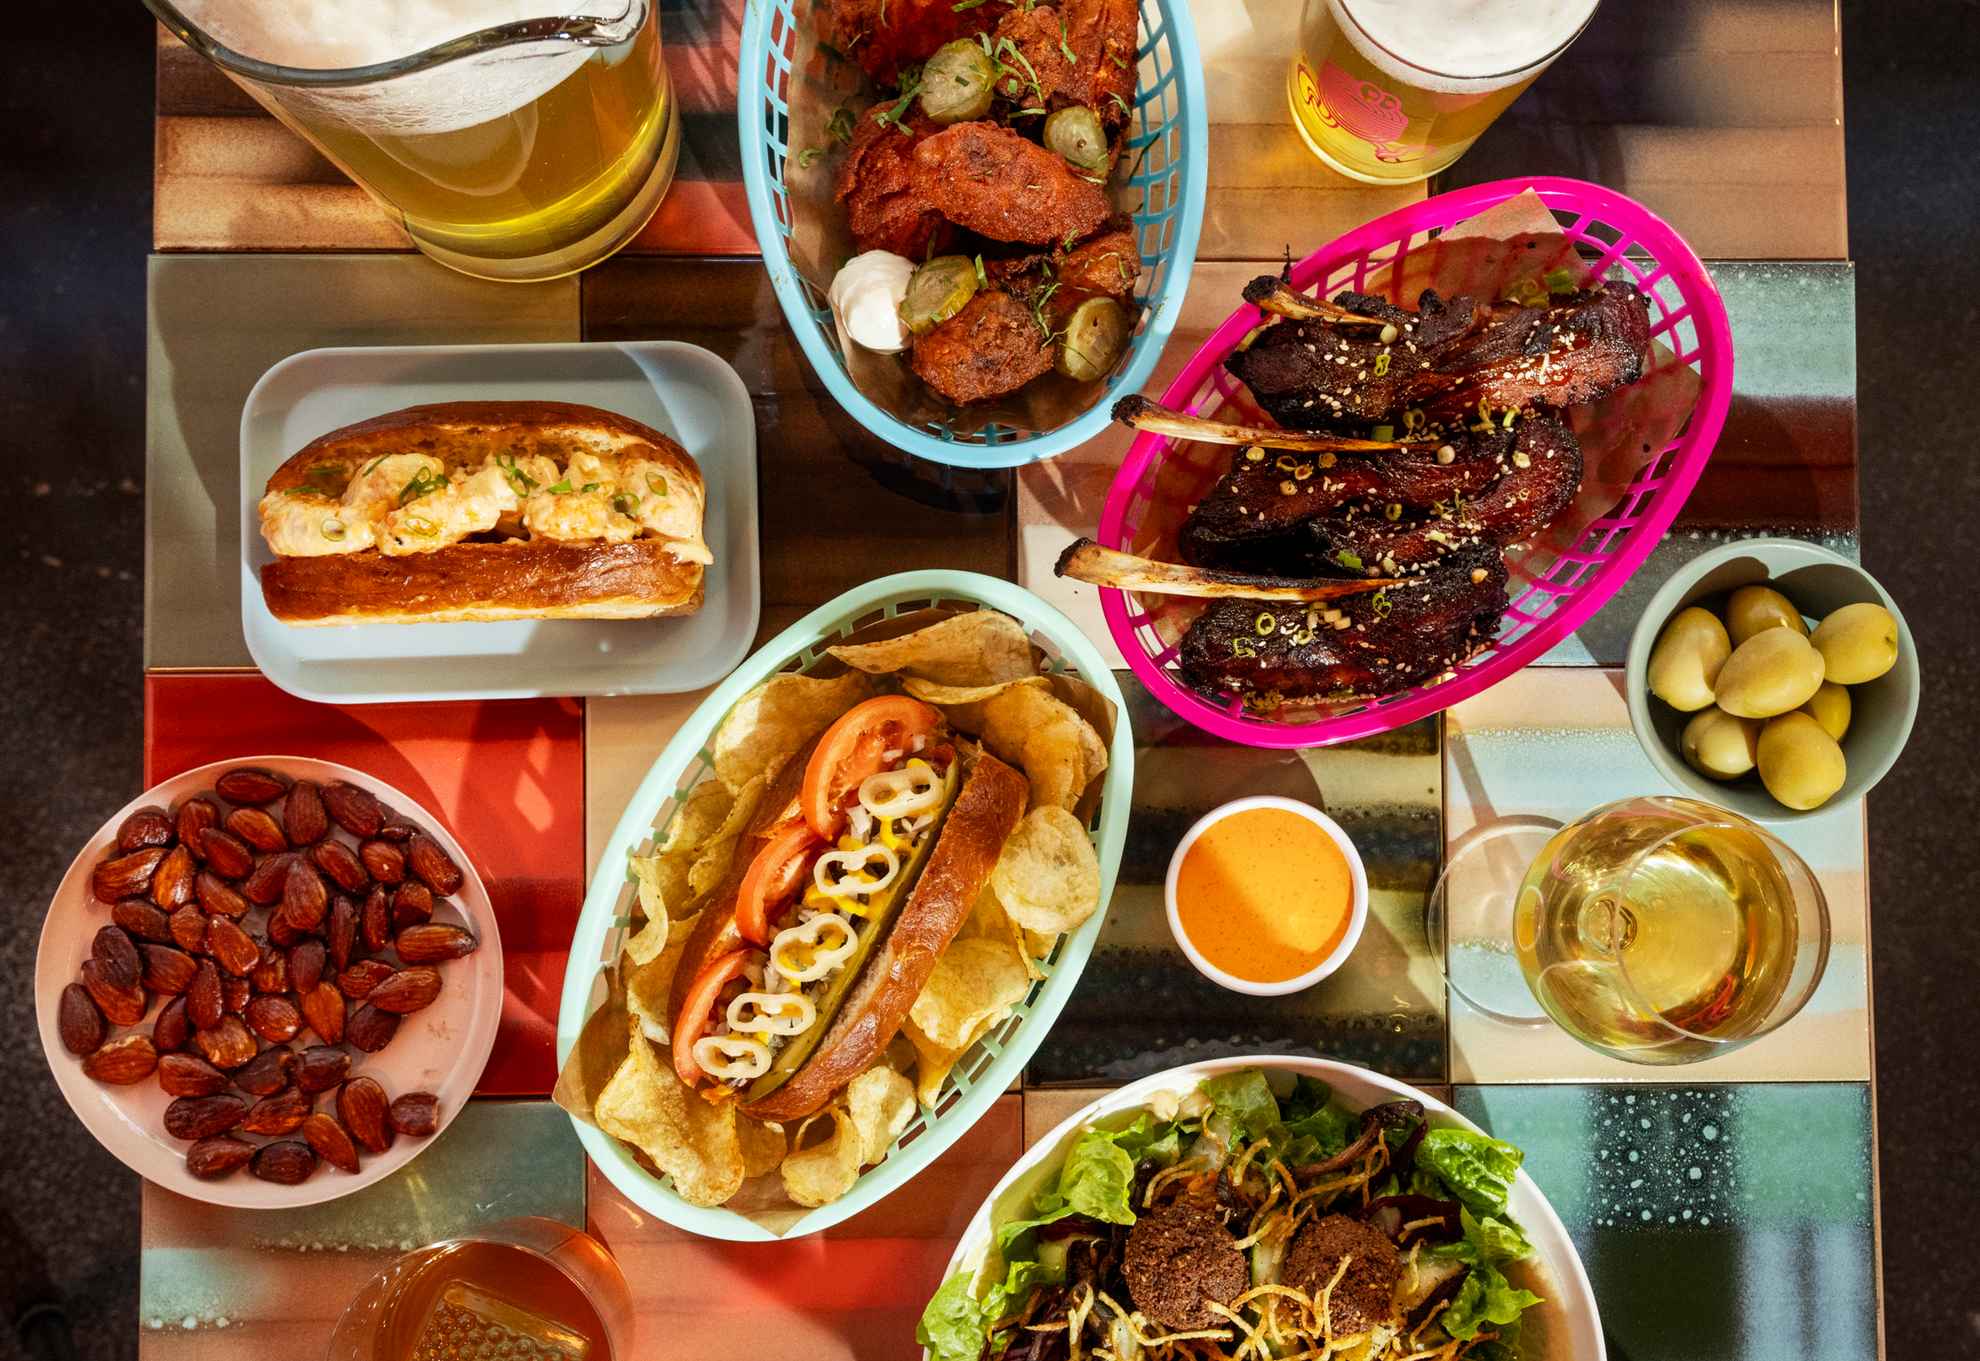 Ein quadratischer Tisch, gefüllt mit buntem Streetfood in verschiedenen Körben und auf Tellern, sowie Gläsern mit Bier und Wein.